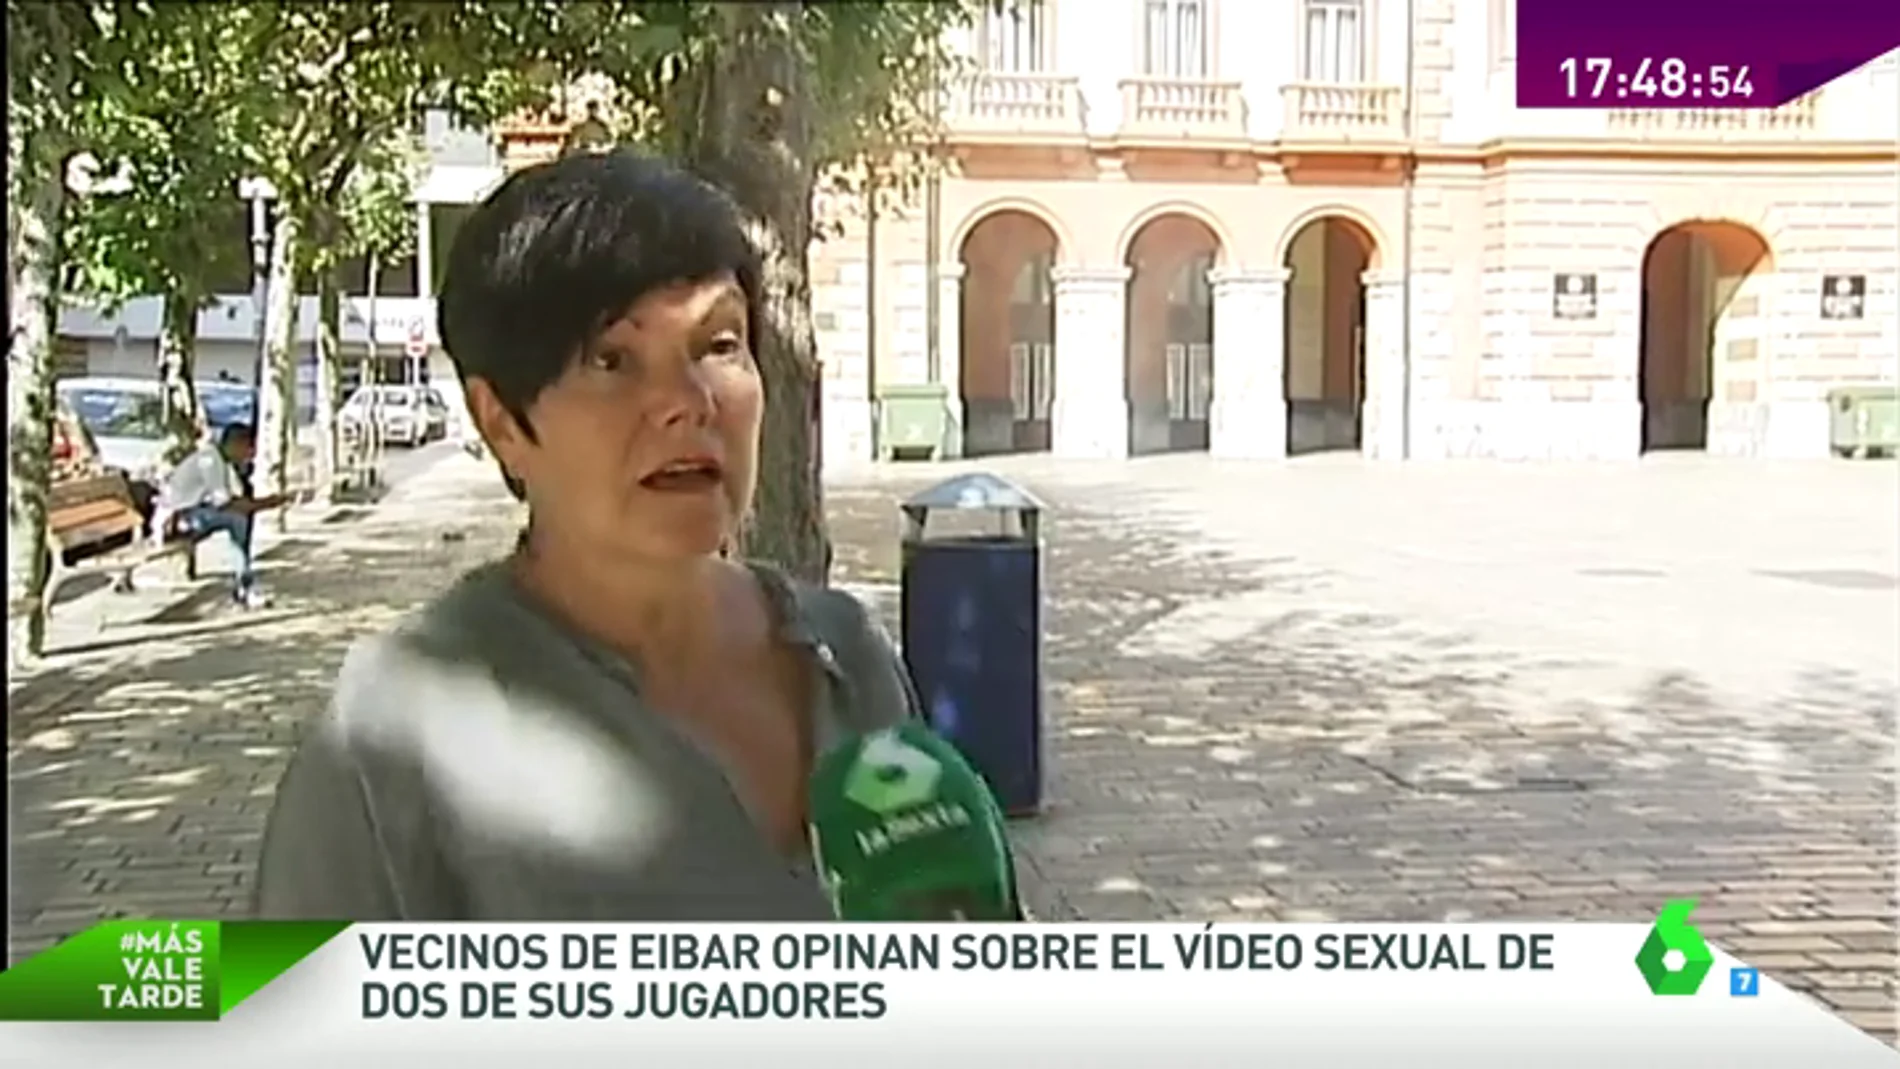 Frame 31.857408 de: Los vecinos de Eibar, sobre la difusión del vídeo sexual de dos jugadores: "Veo lógico que la chica haya denunciado"